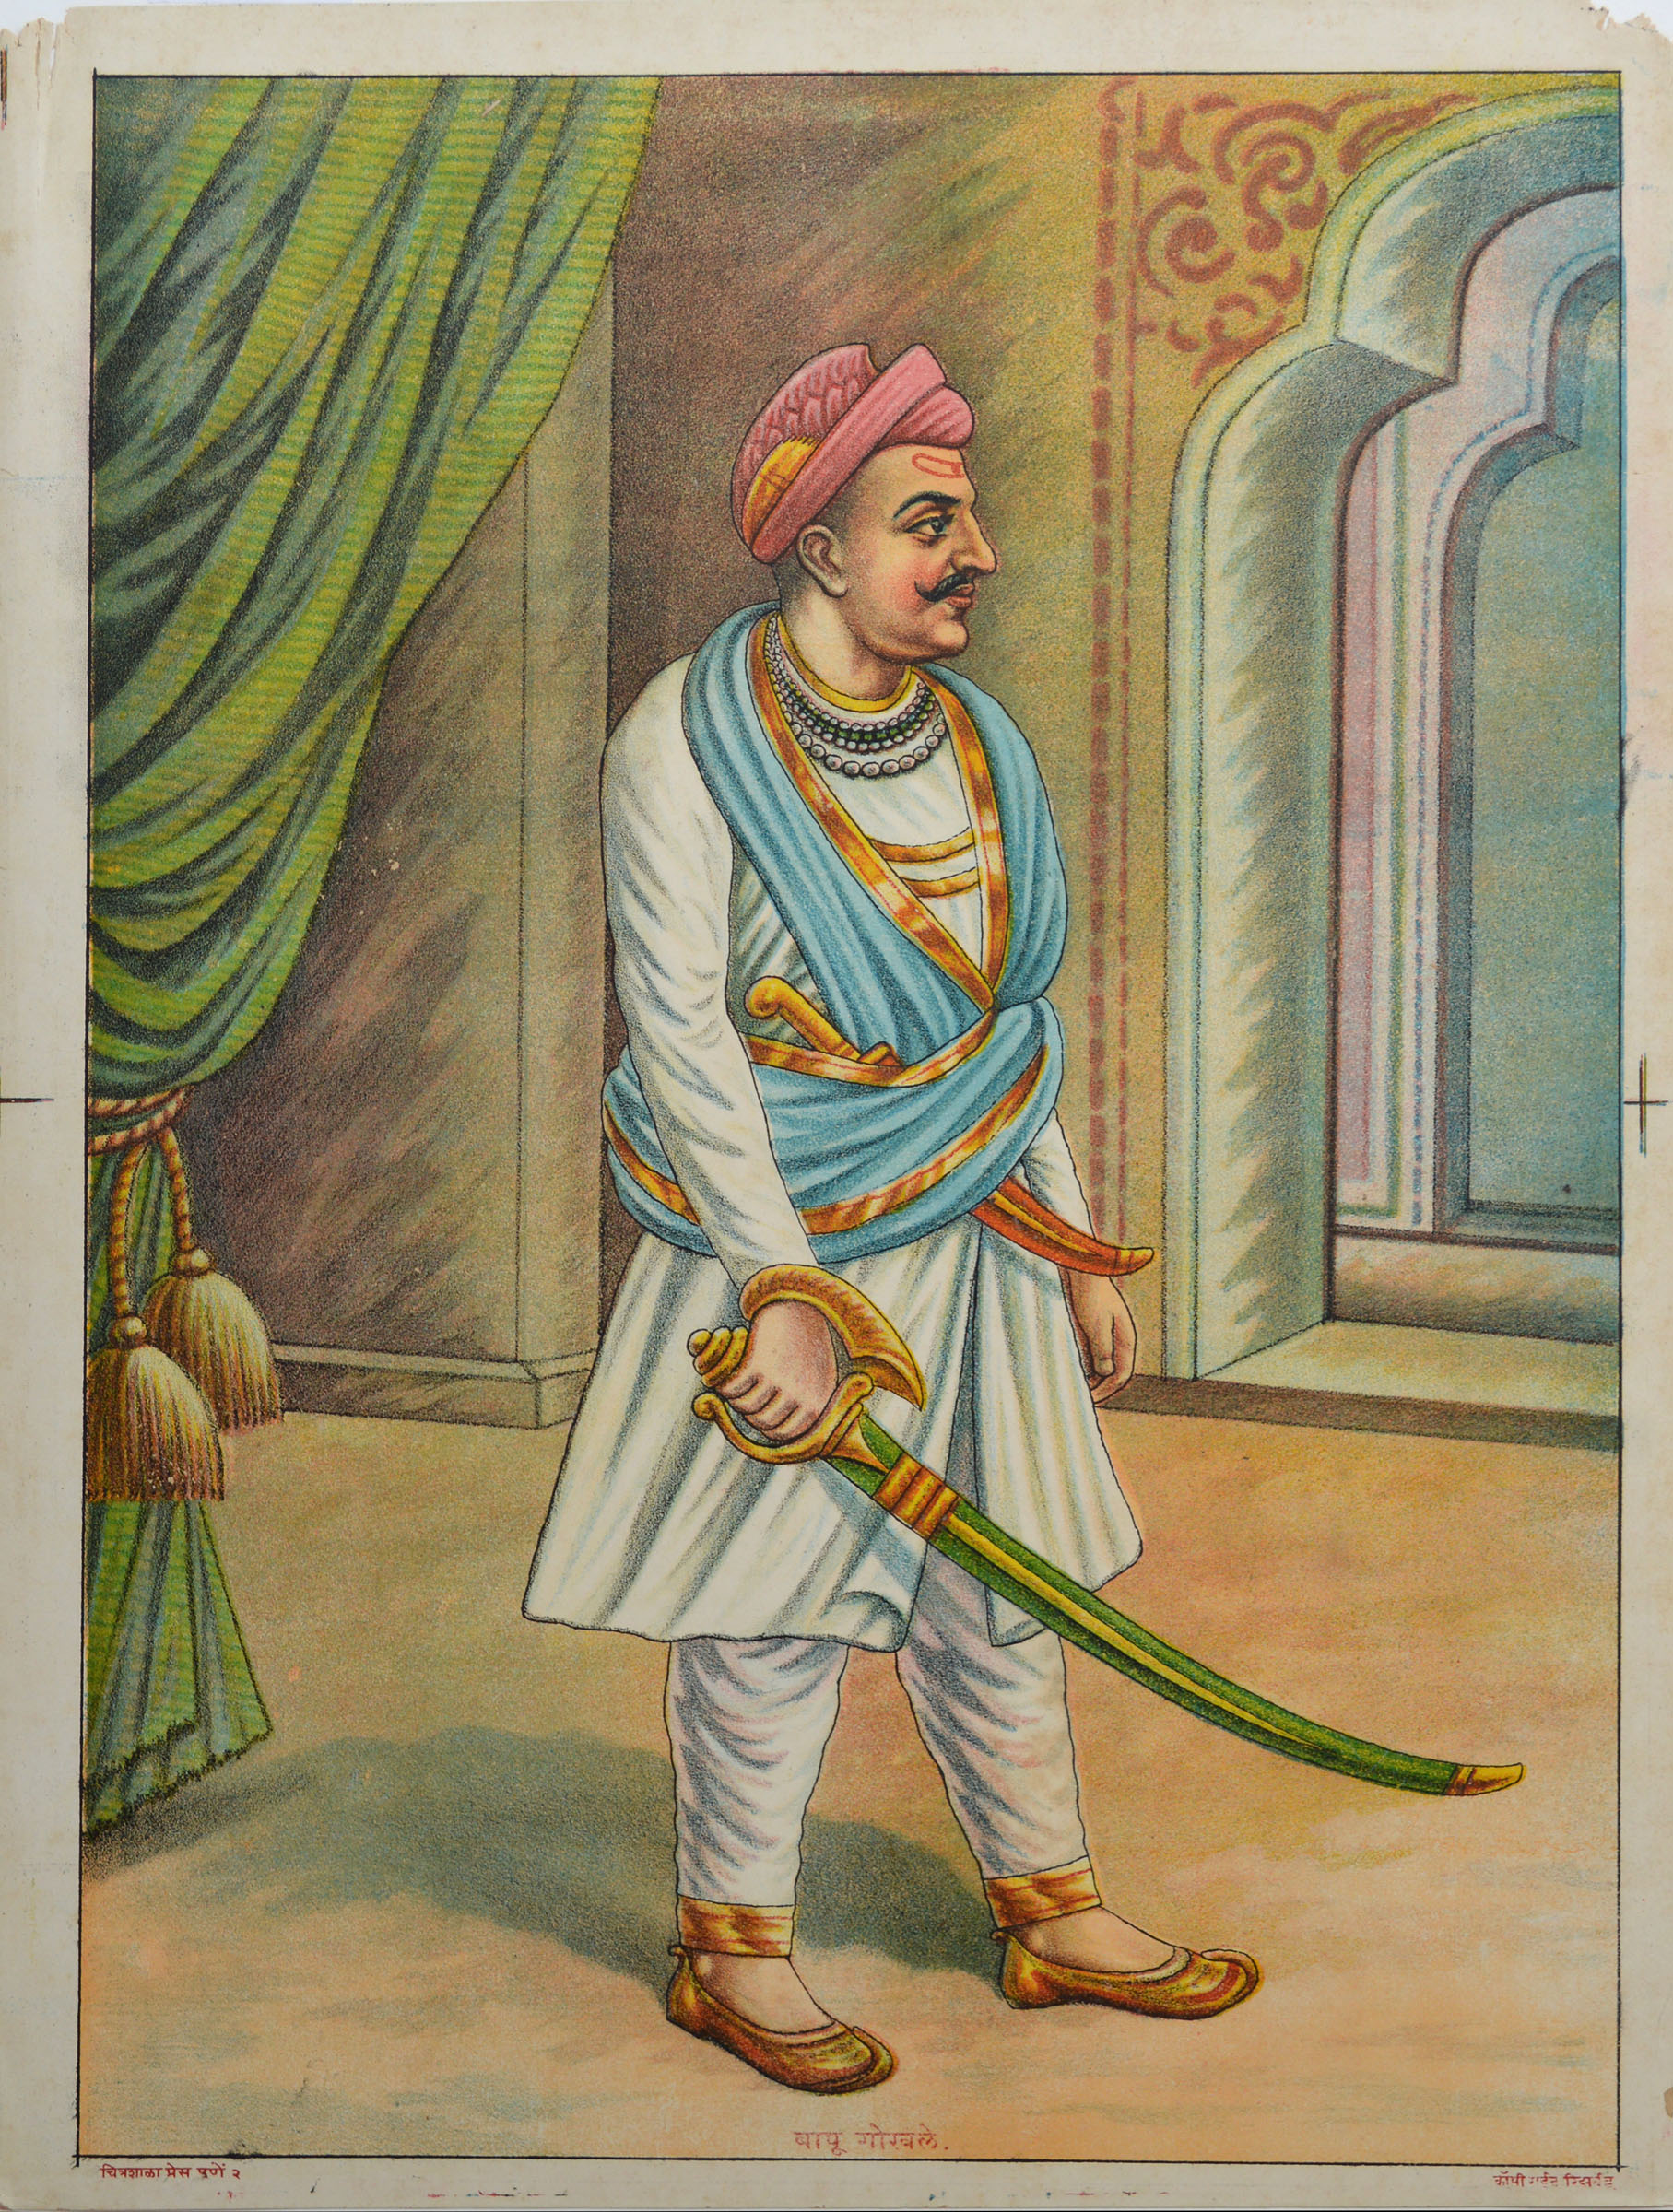 Bapu Gokhale (1777-1818)